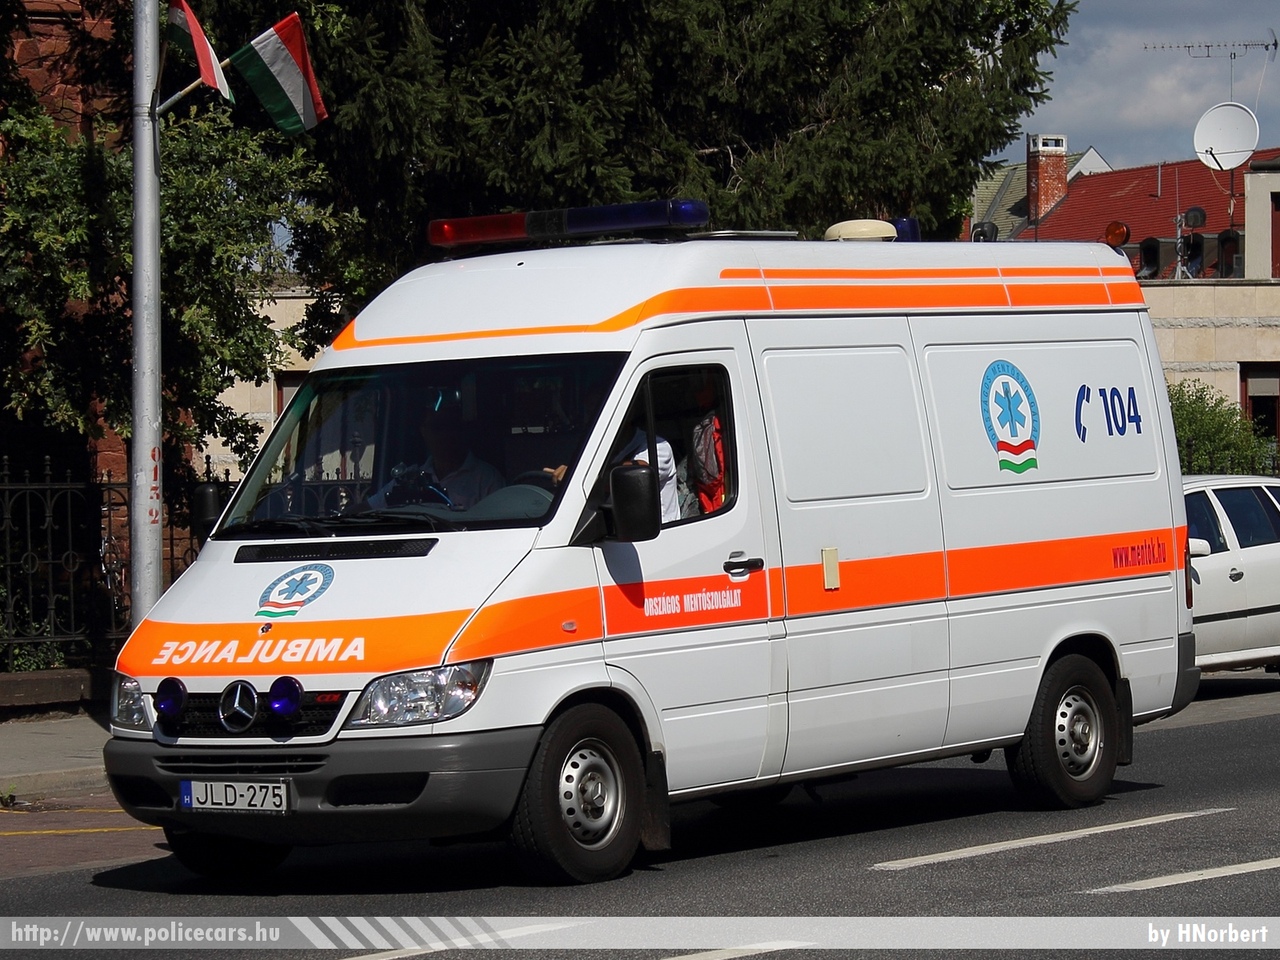 Mercedes-Benz Sprinter 313 CDI, Országos Mentõszolgálat, fotó: HNorbert
Keywords: magyar Magyarország mentő mentőautó OMSZ Hungary hungarian ambulance JLD-275